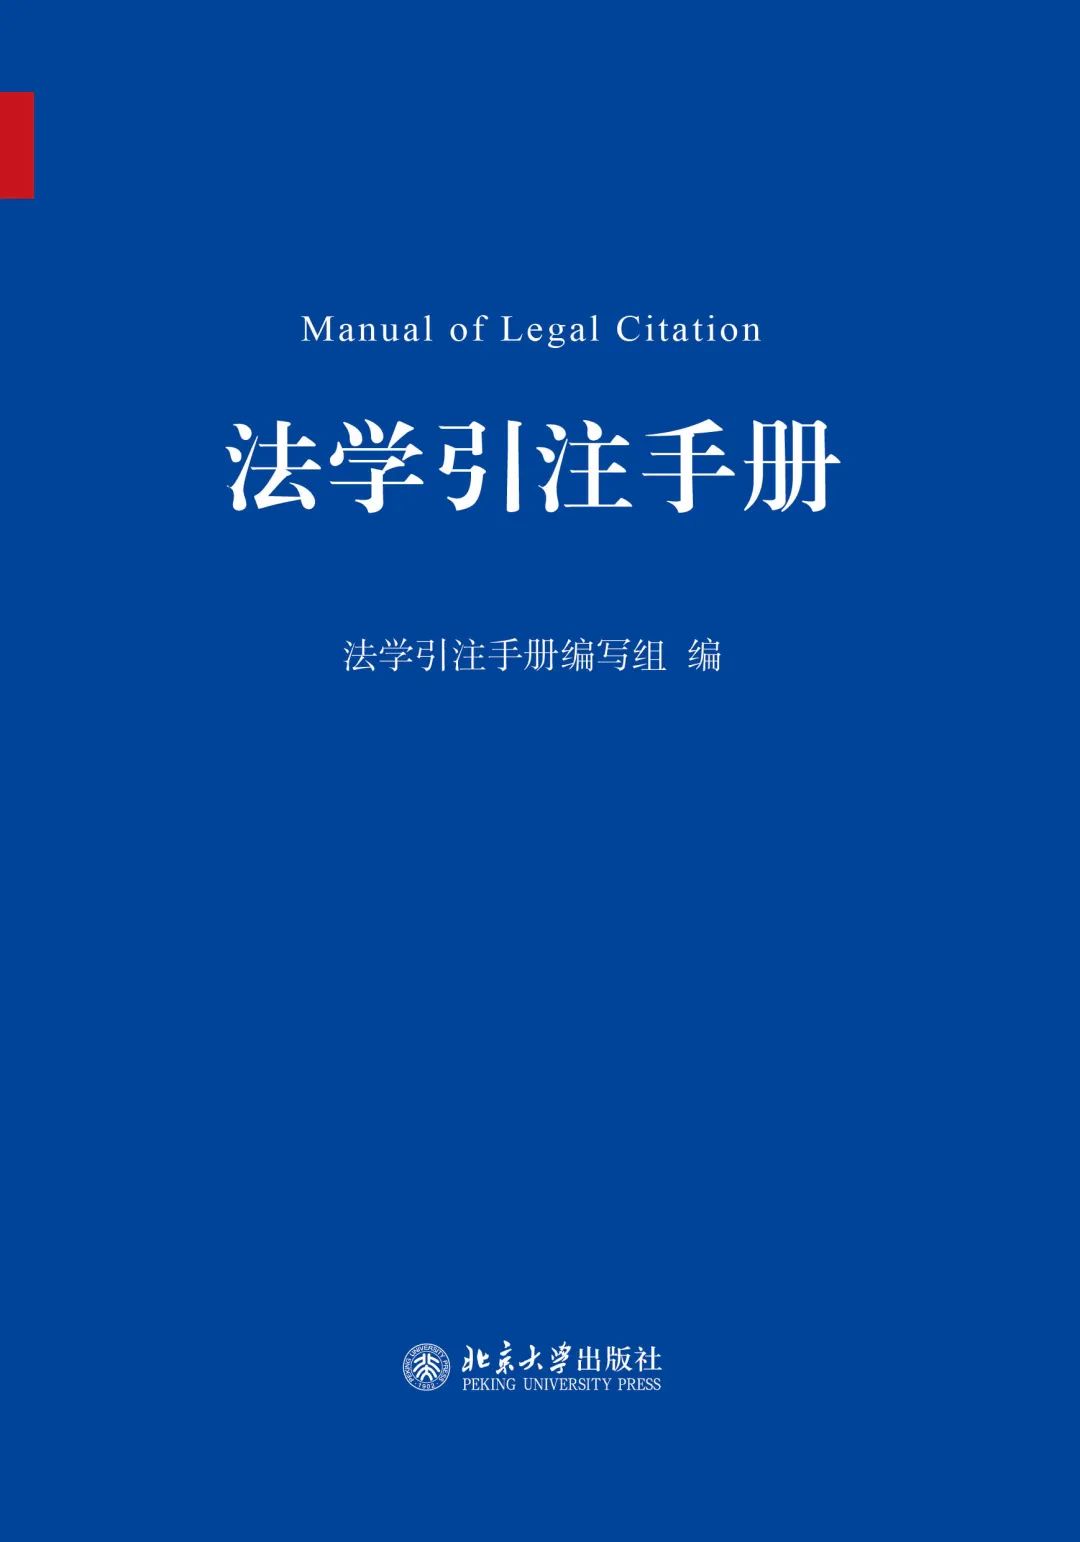 法学引注手册编写组 / 编北京大学出版社2020年版